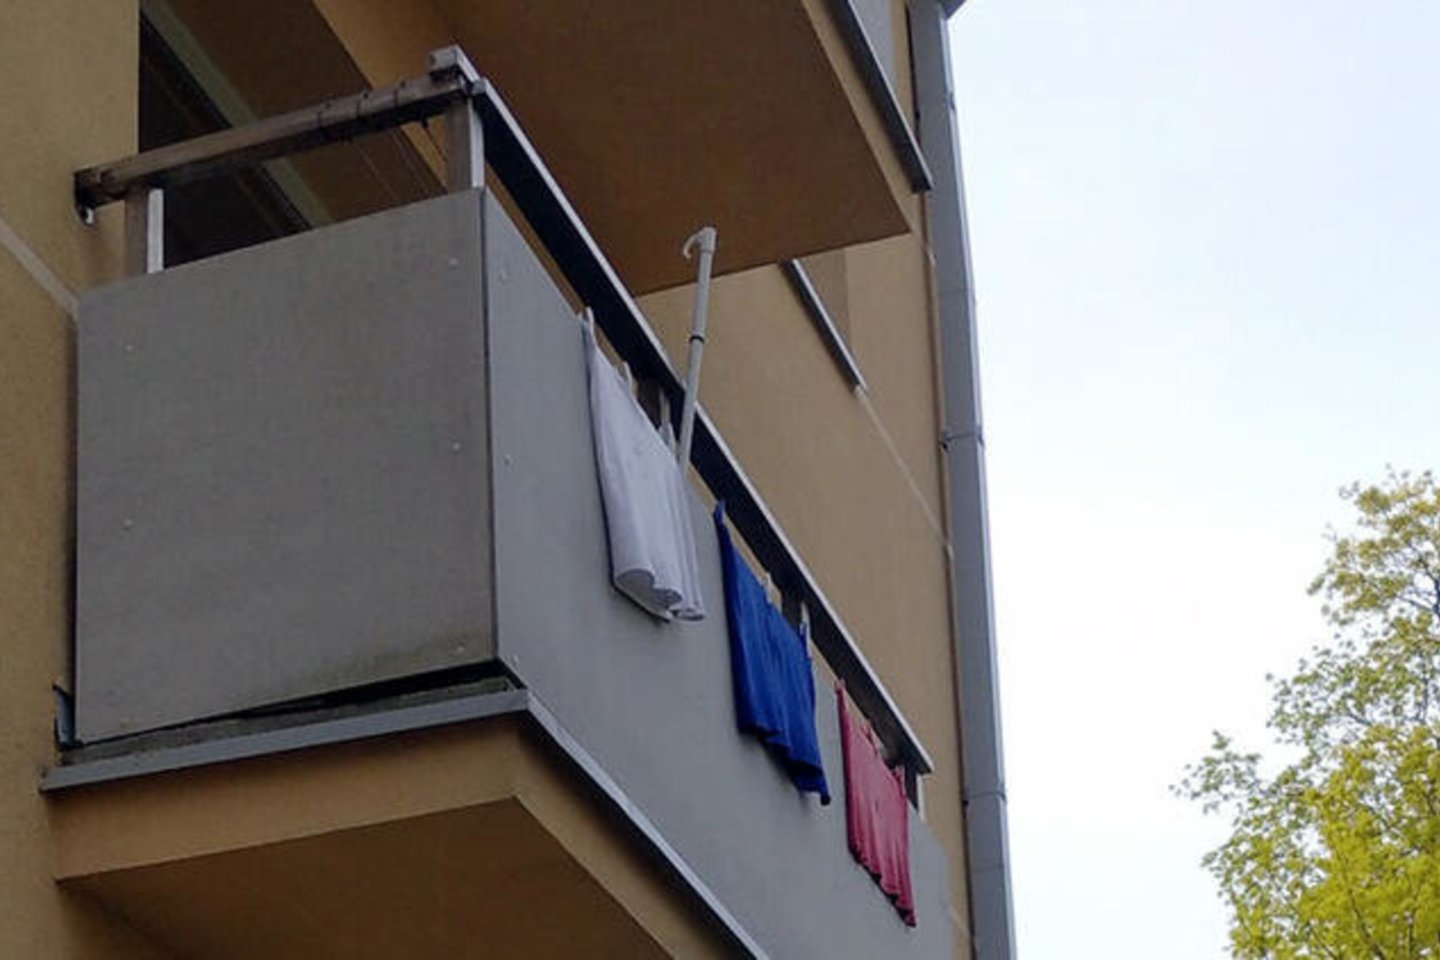  Išvydę ant balkono padžiautus Rusijos vėliavos spalvų skalbinius, palangiškiai įžvelgė galimą provokaciją.<br> Facebook grupės „Mūsų Palanga“ nuotr.